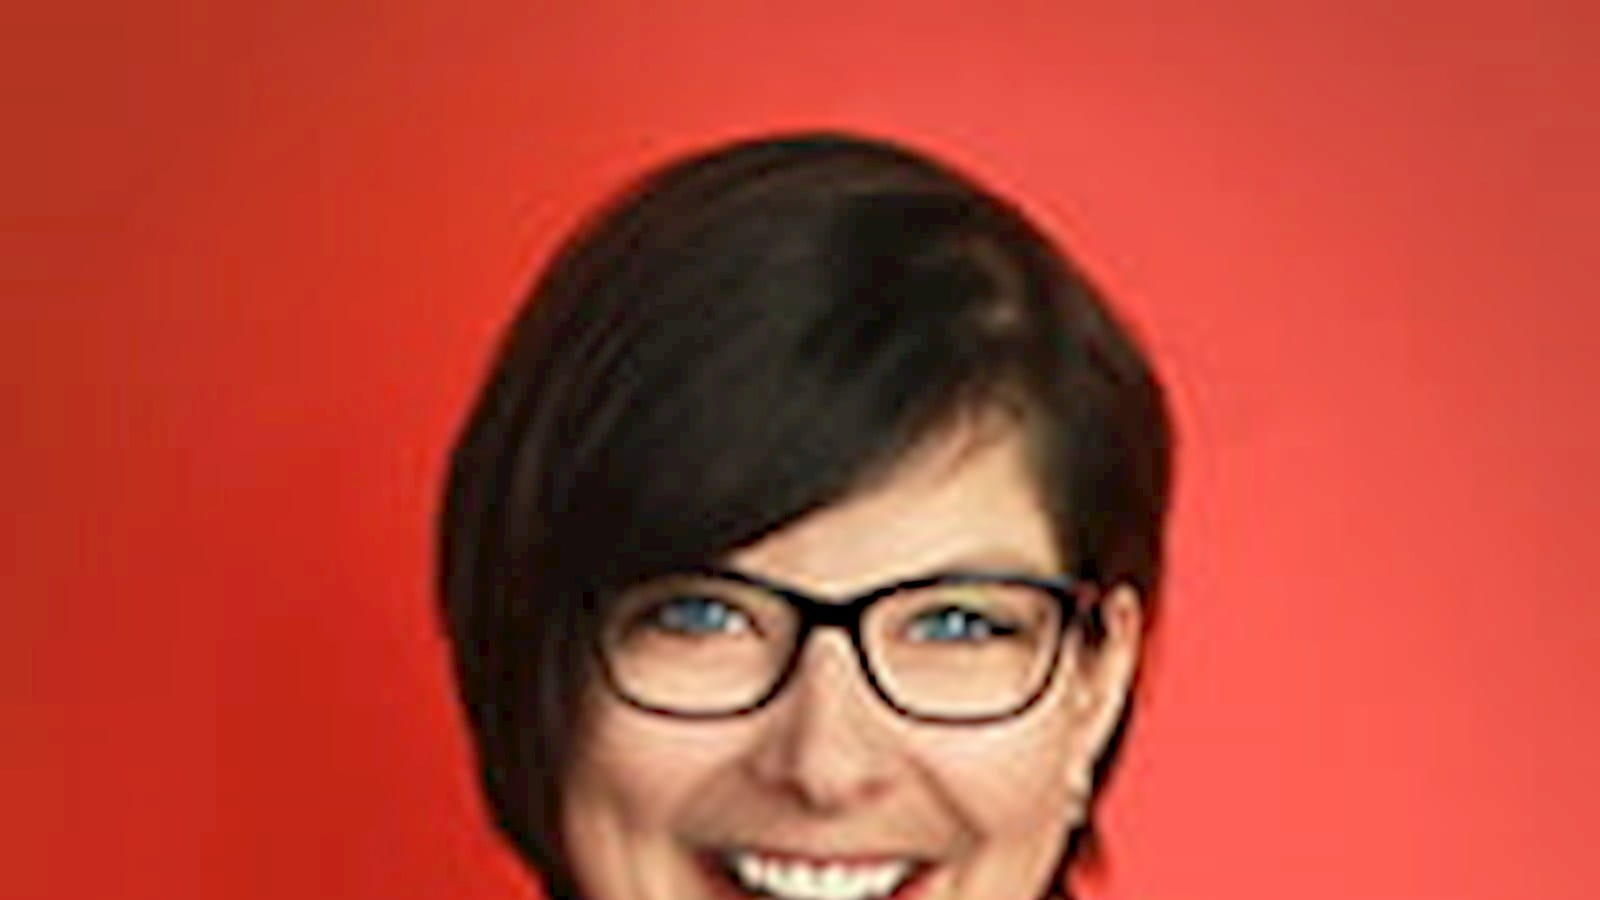 Melanie Waldmannstetter